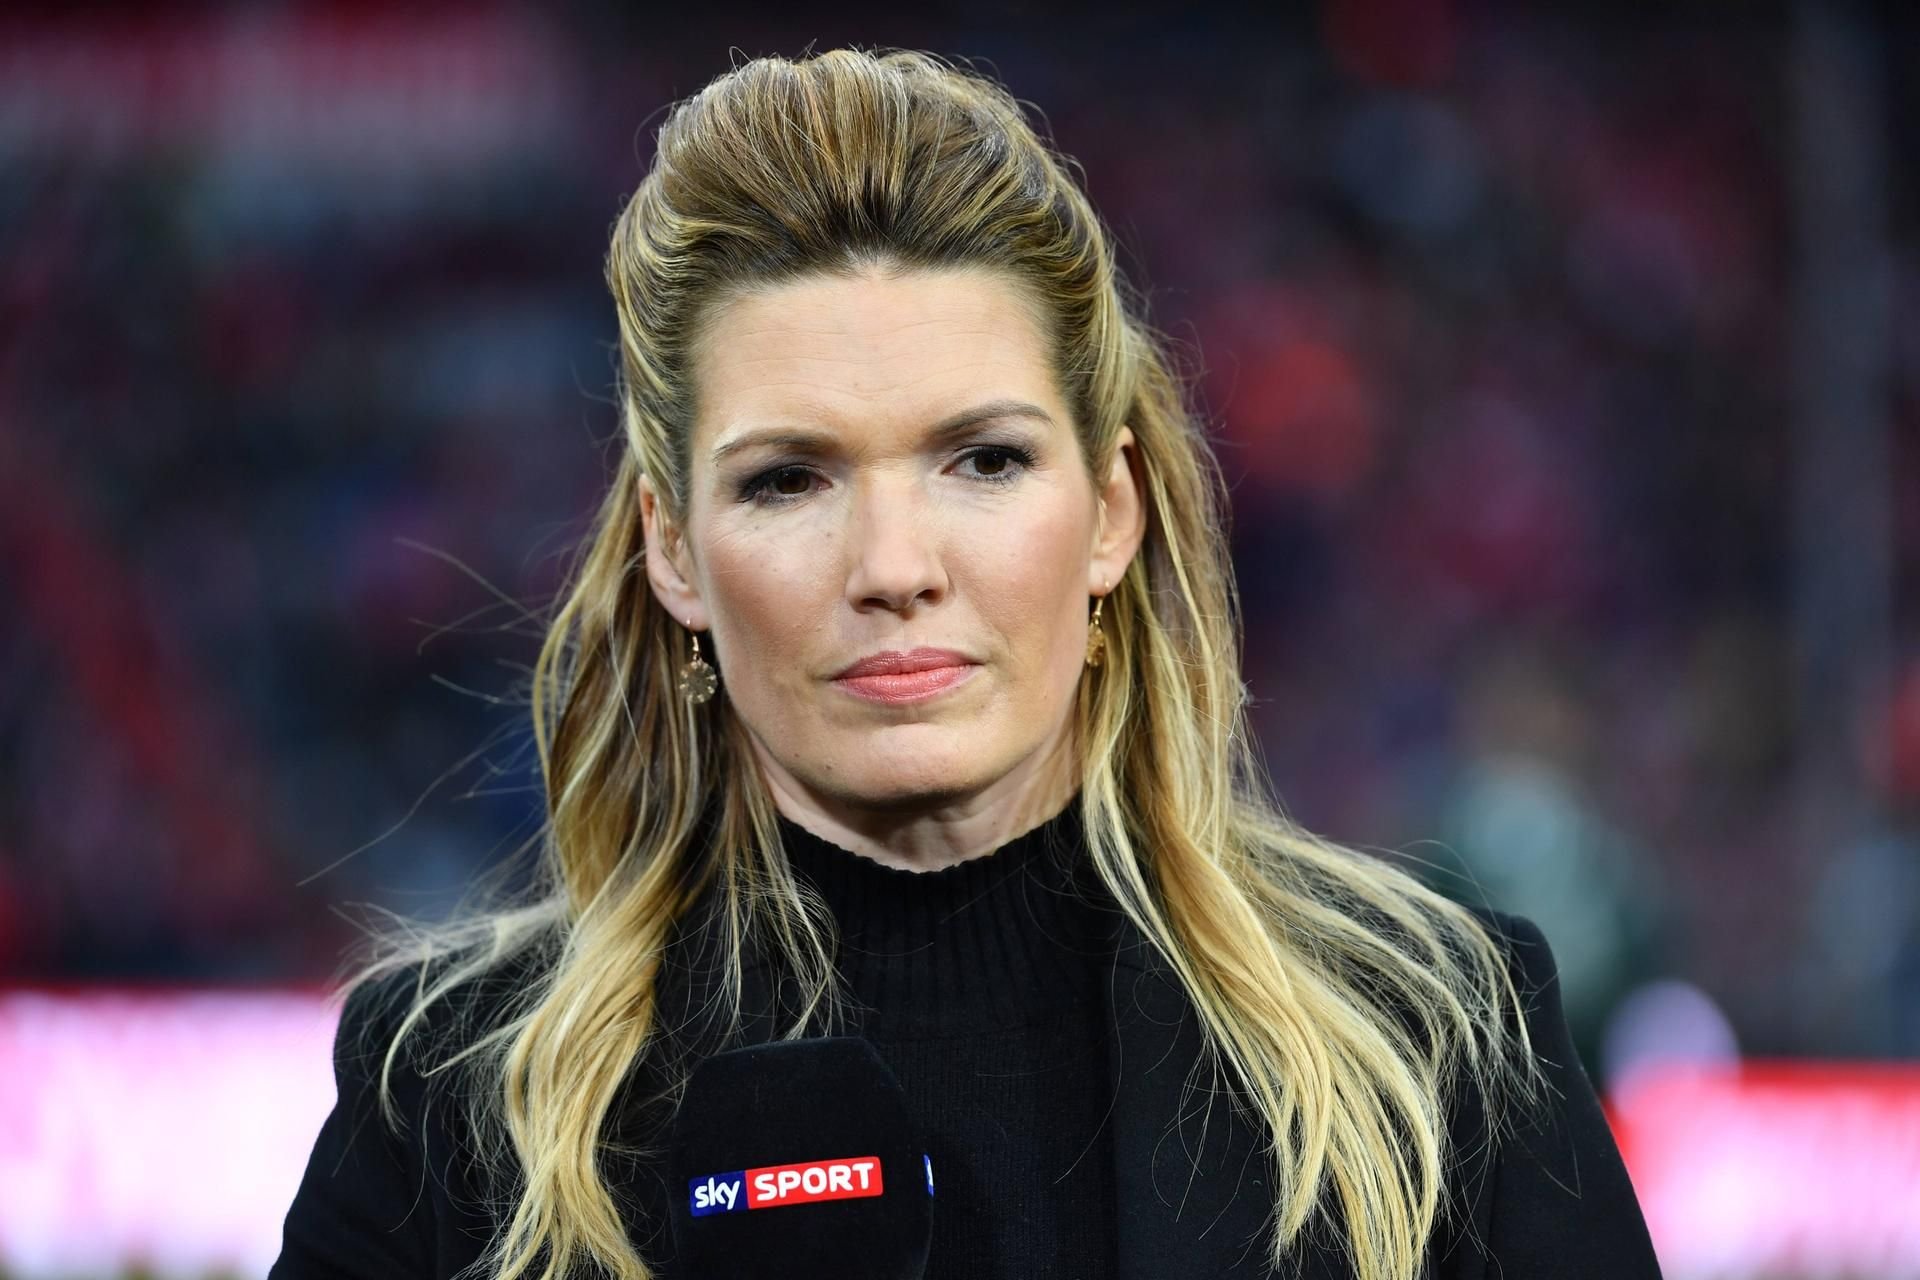 Das Gesicht der Fußball-Übertragung Jessica Libbertz verlässt Sky Pay-TV-Sender verliert prominenteste Moderatorin nach 17 Jahren